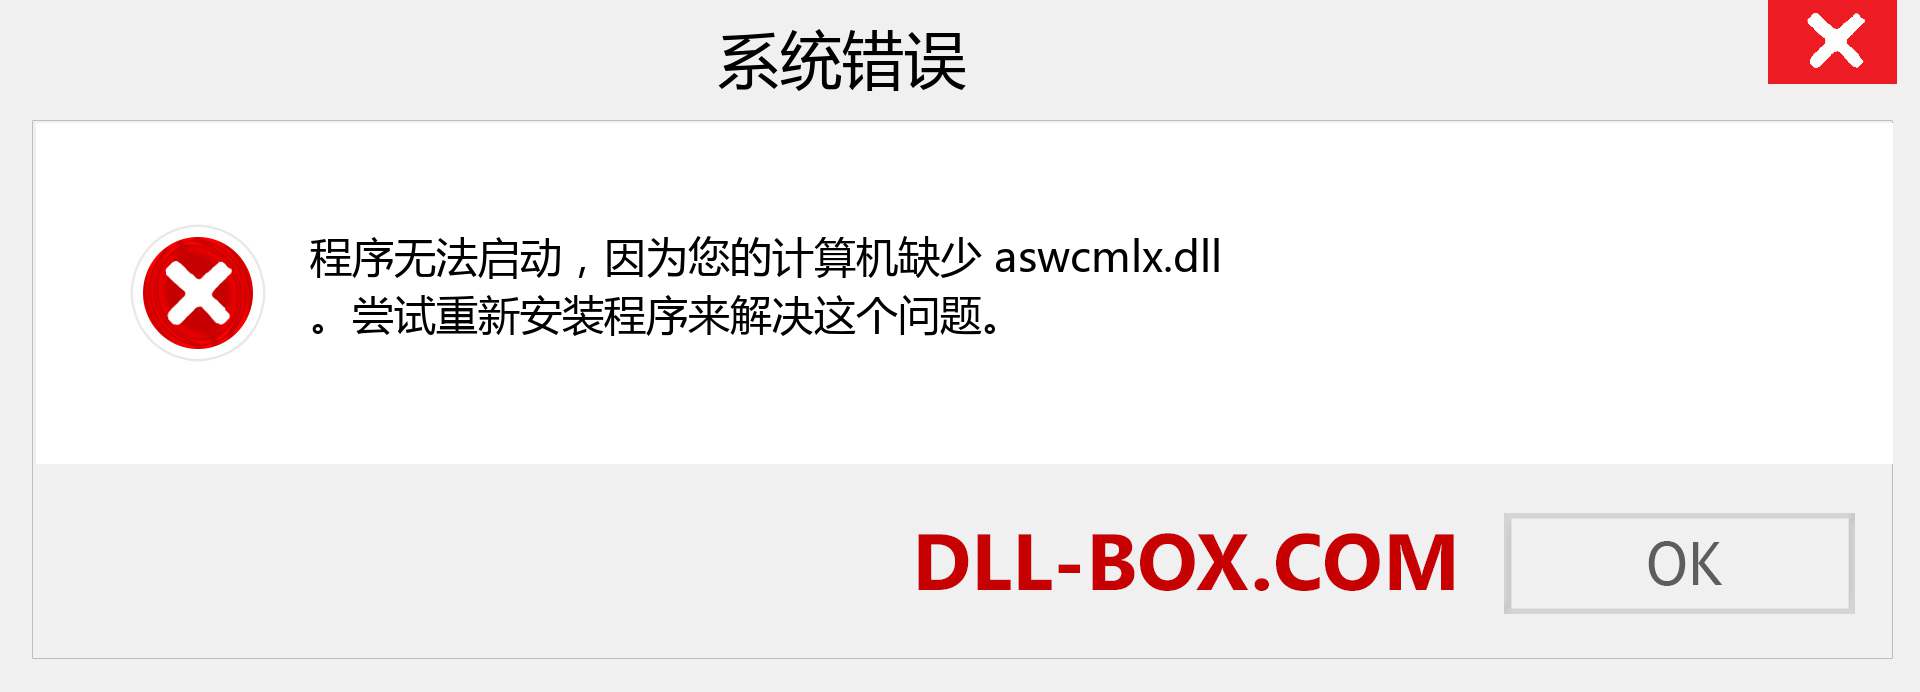 aswcmlx.dll 文件丢失？。 适用于 Windows 7、8、10 的下载 - 修复 Windows、照片、图像上的 aswcmlx dll 丢失错误